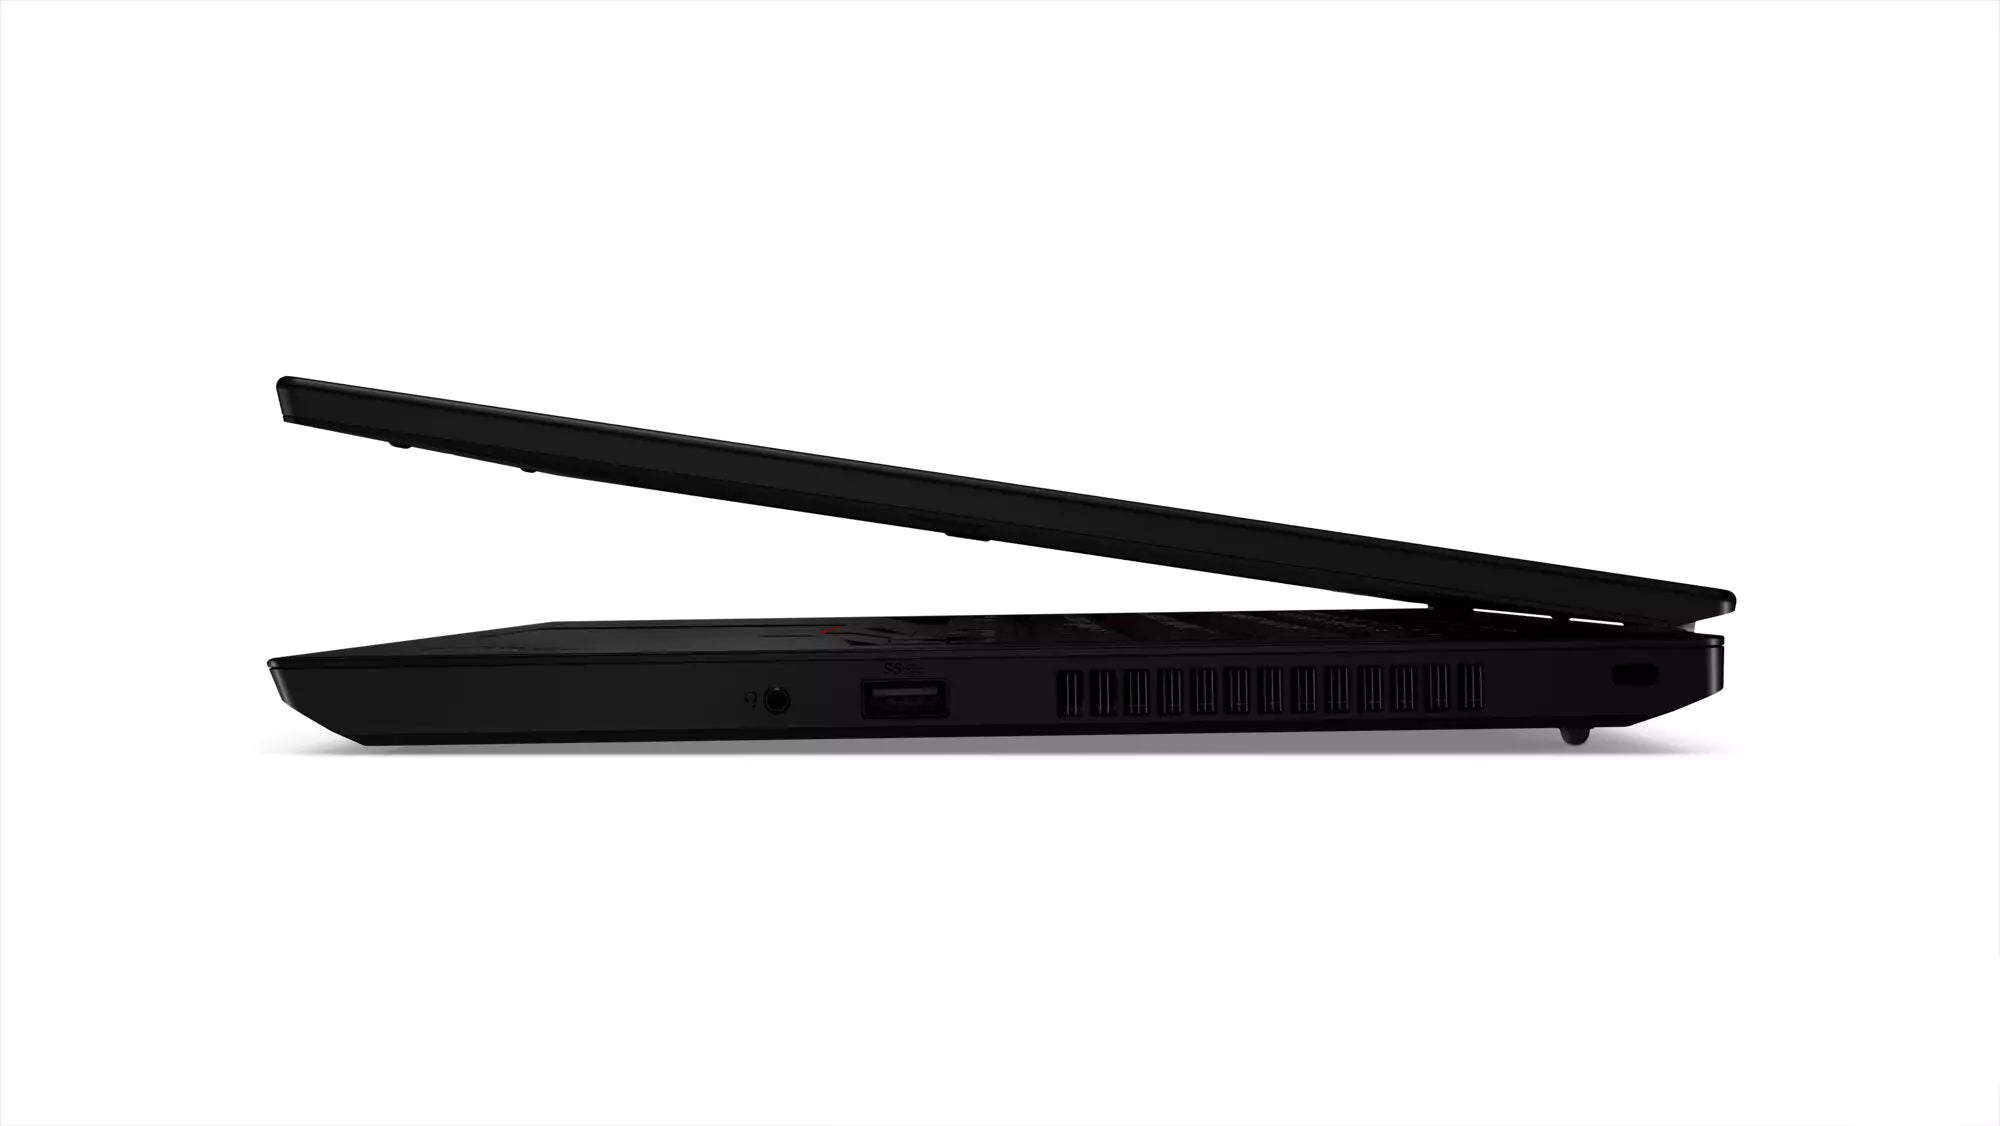 Lenovo ThinkPad L490